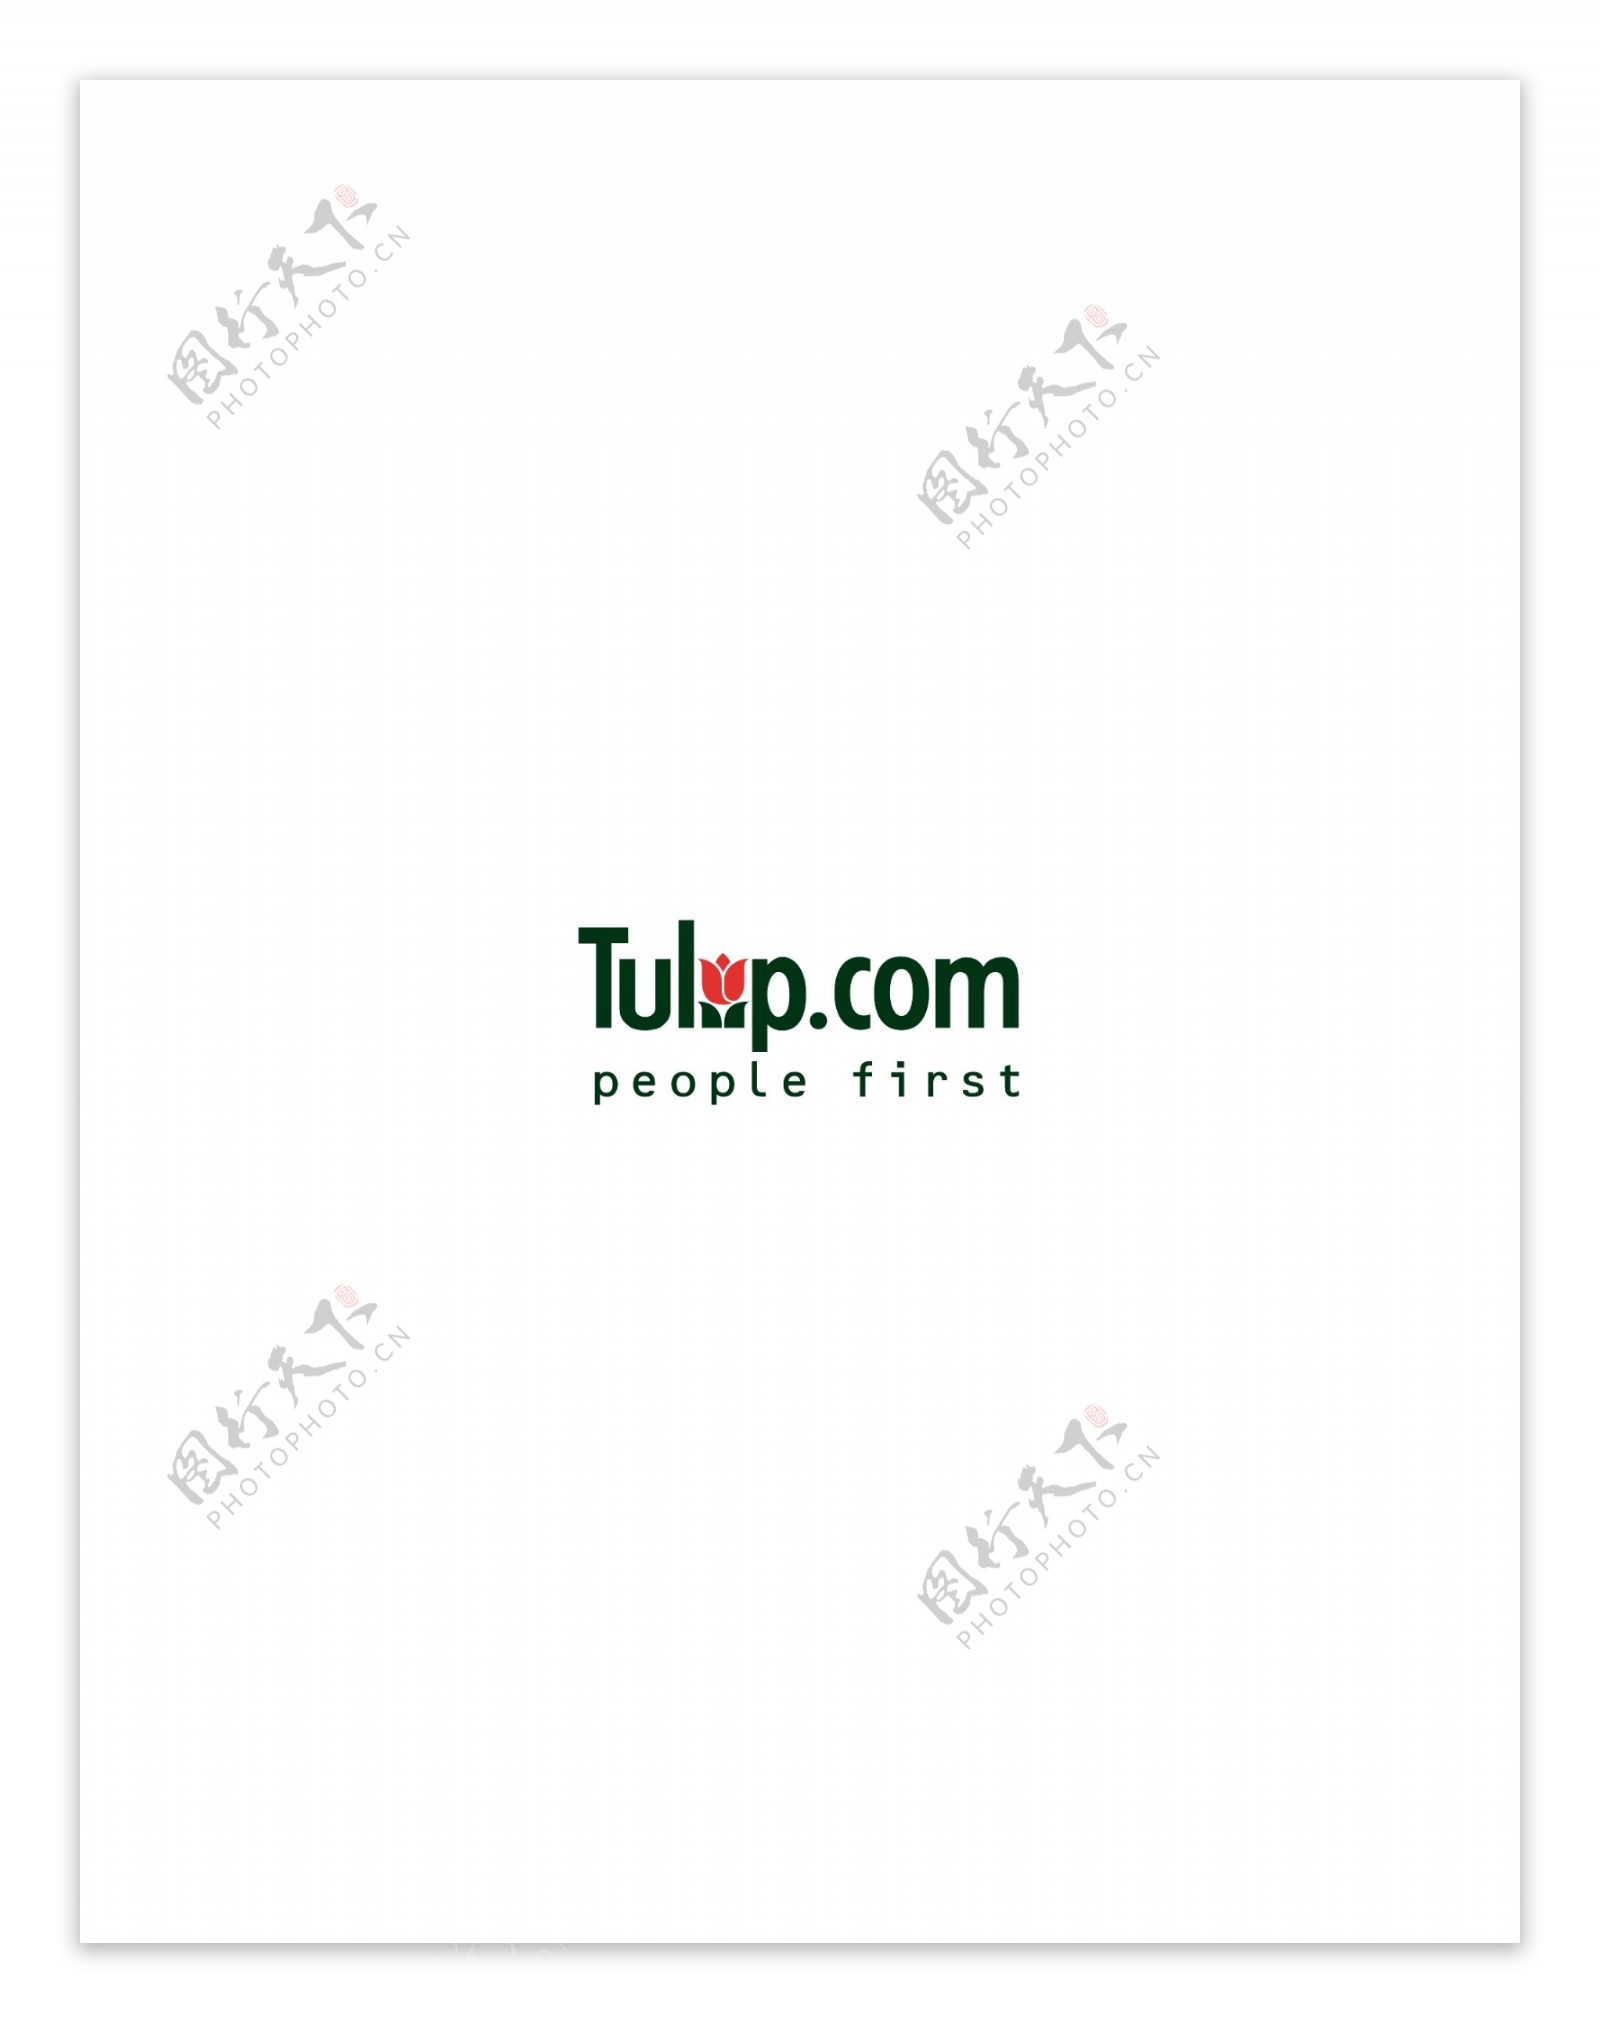 TulipComlogo设计欣赏足球队队徽LOGO设计TulipCom下载标志设计欣赏